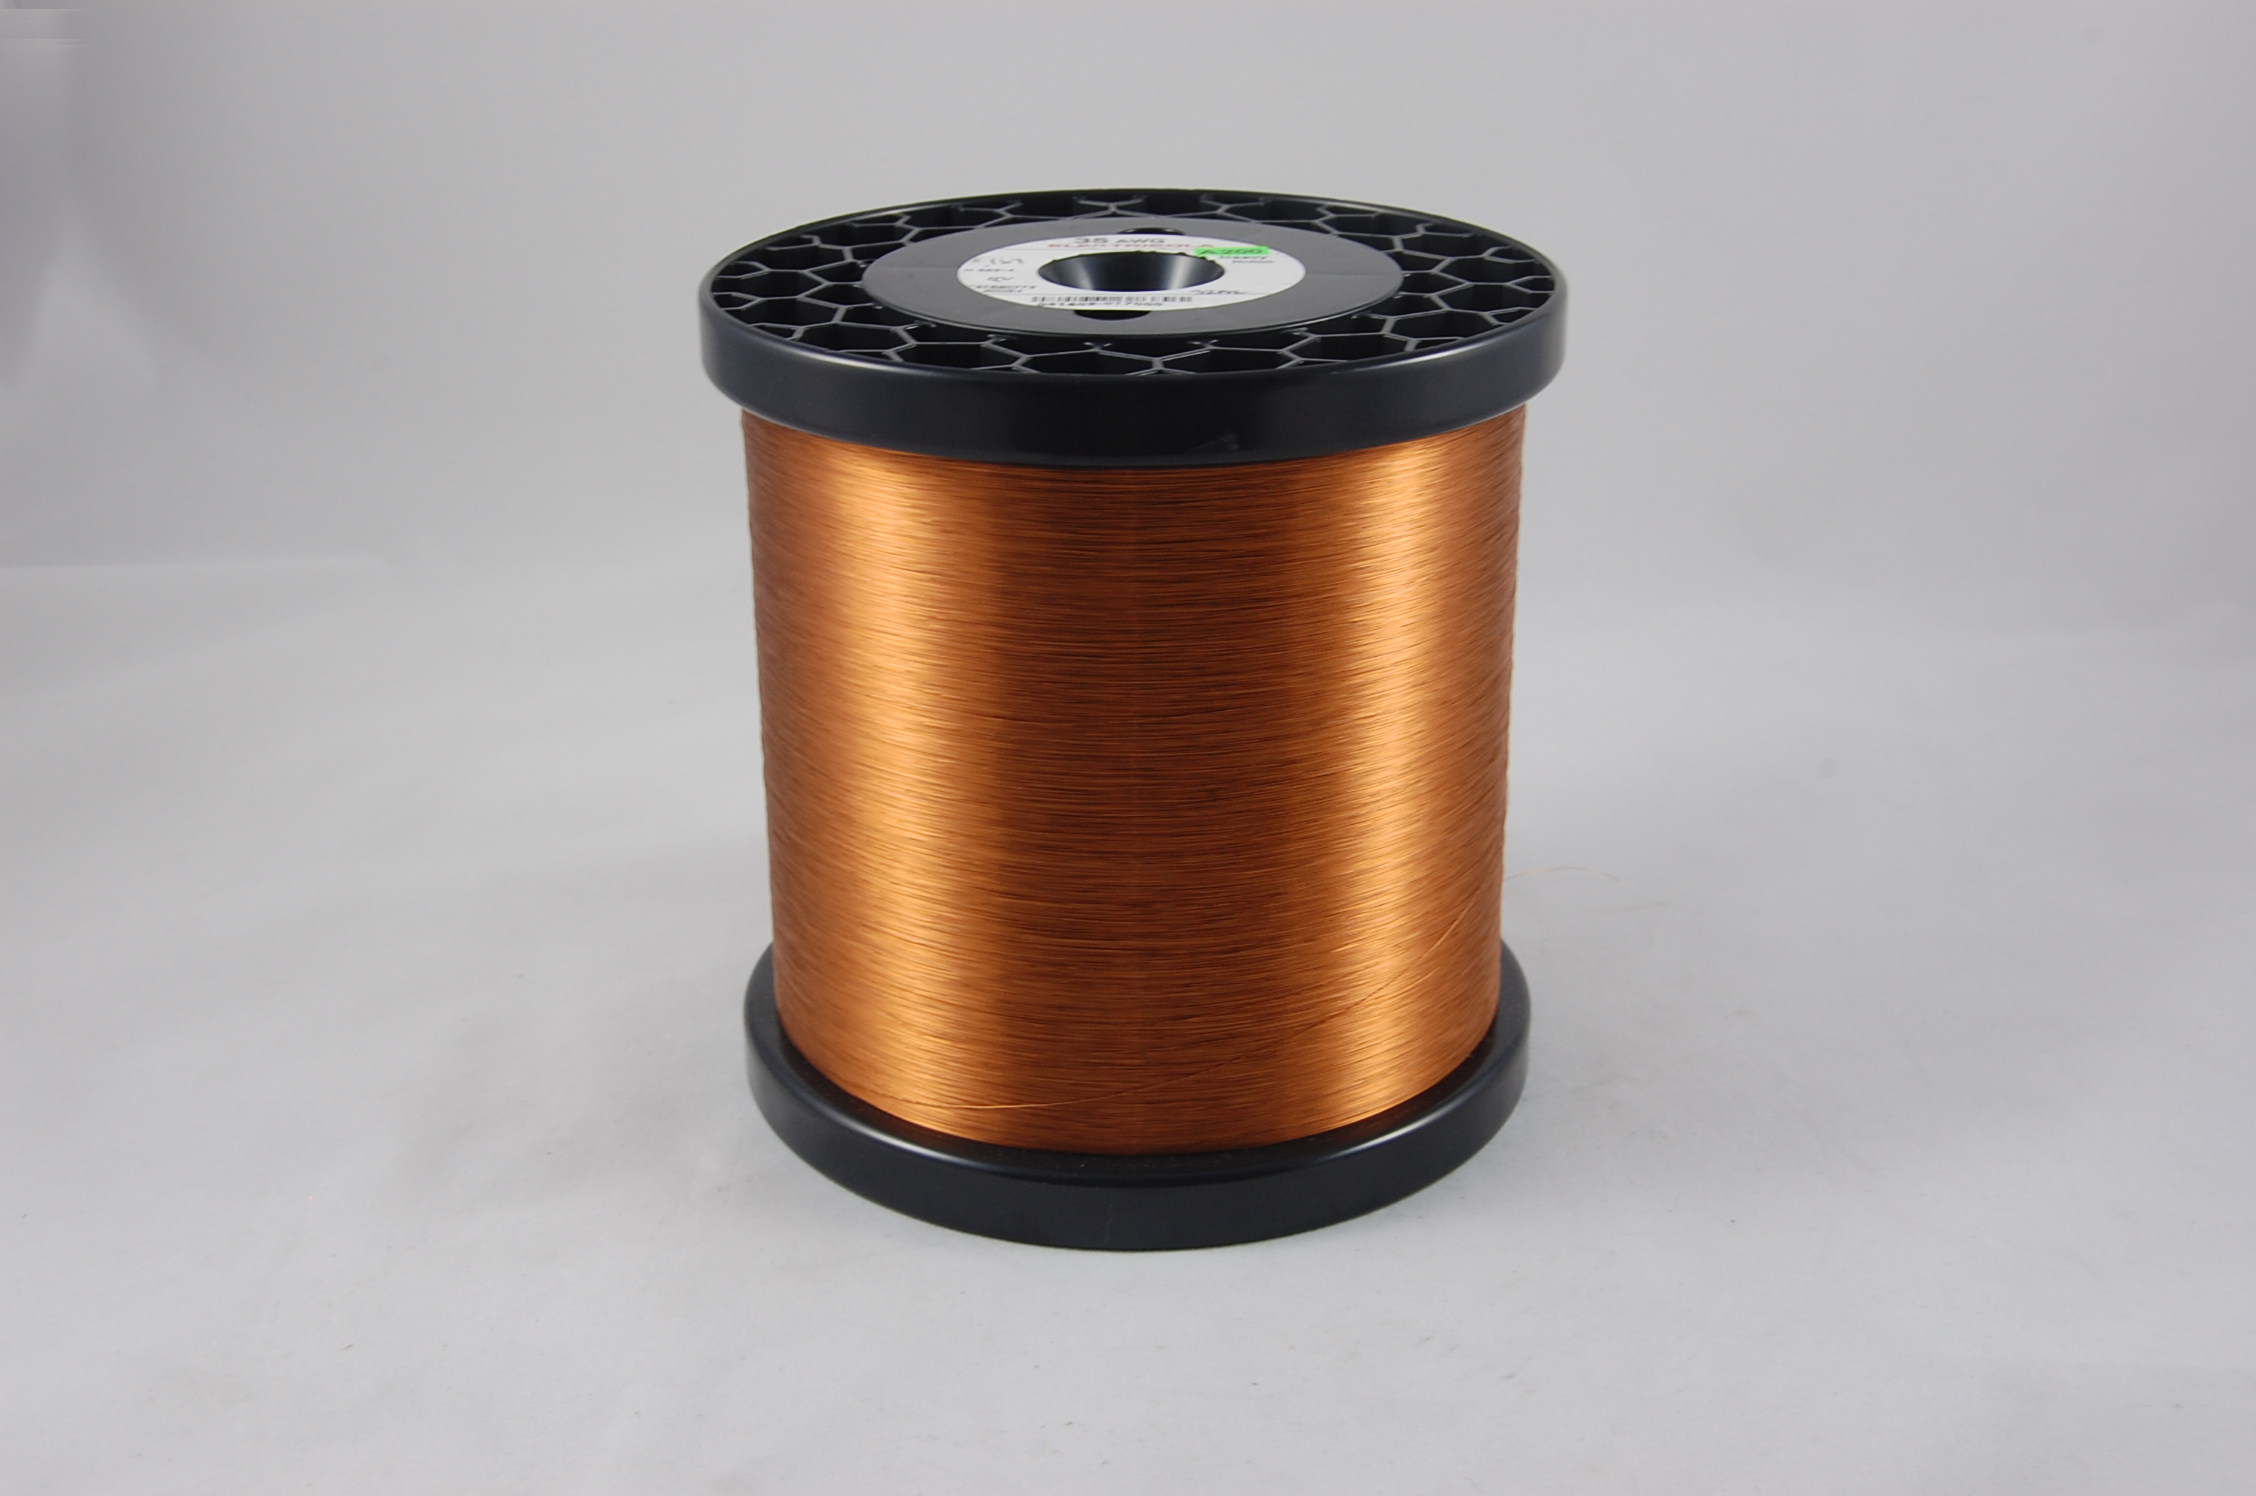 #34 Heavy Amidester 200 Round MW 74 Copper Magnet Wire 200°C, copper,  14 LB 6" x 6" spool (average wght.)